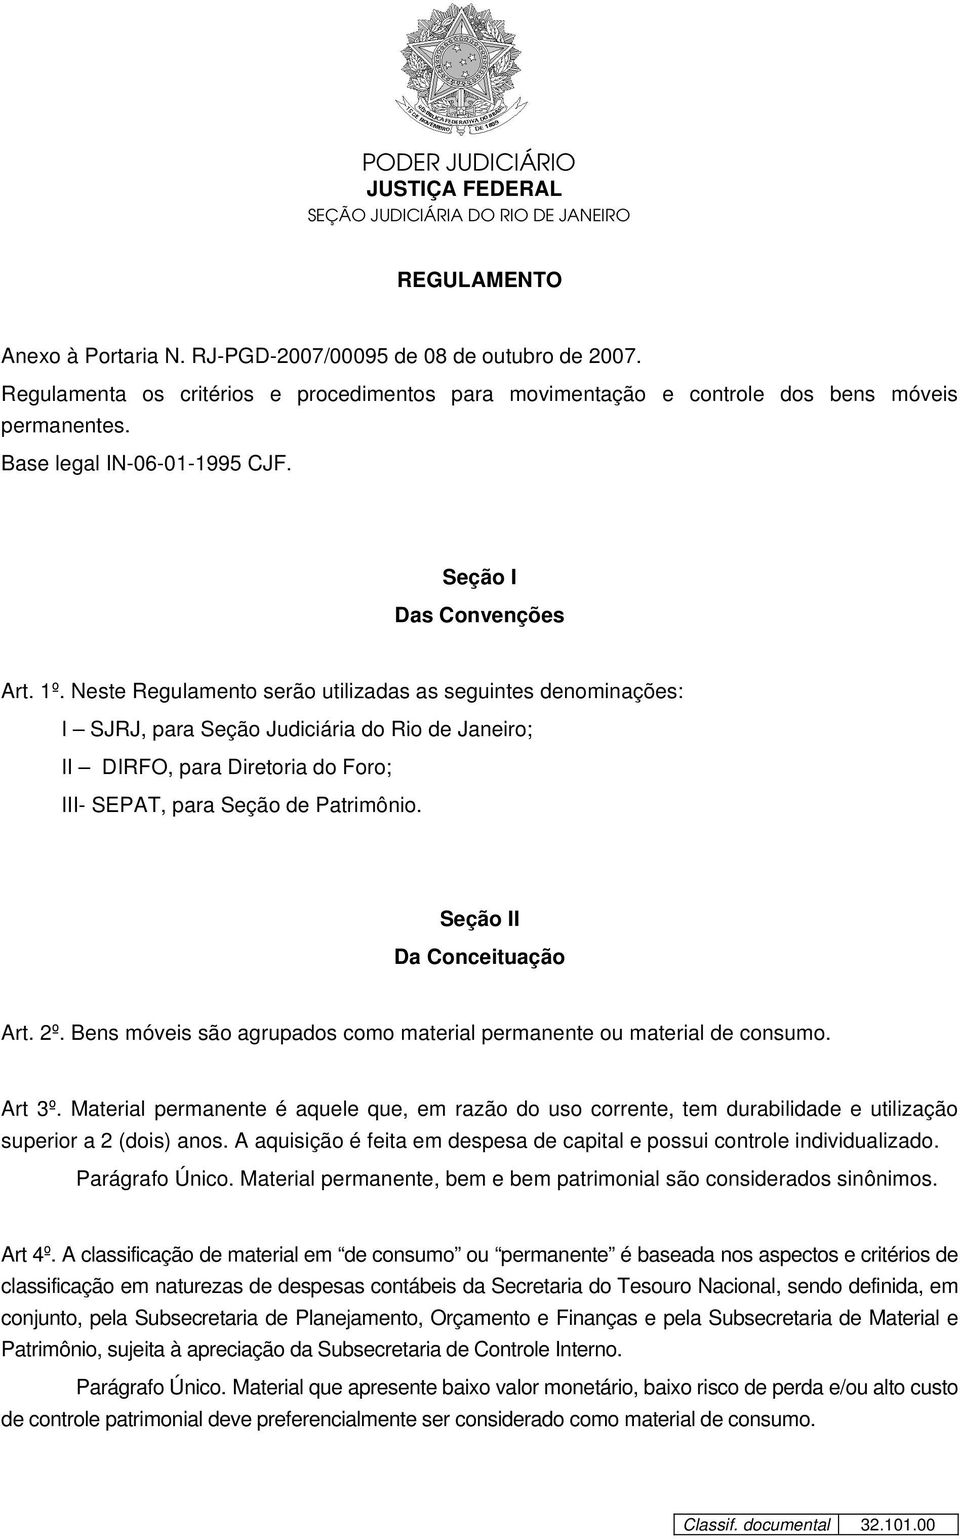 Neste Regulamento serão utilizadas as seguintes denominações: I SJRJ, para Seção Judiciária do Rio de Janeiro; II DIRFO, para Diretoria do Foro; III- SEPAT, para Seção de Patrimônio.